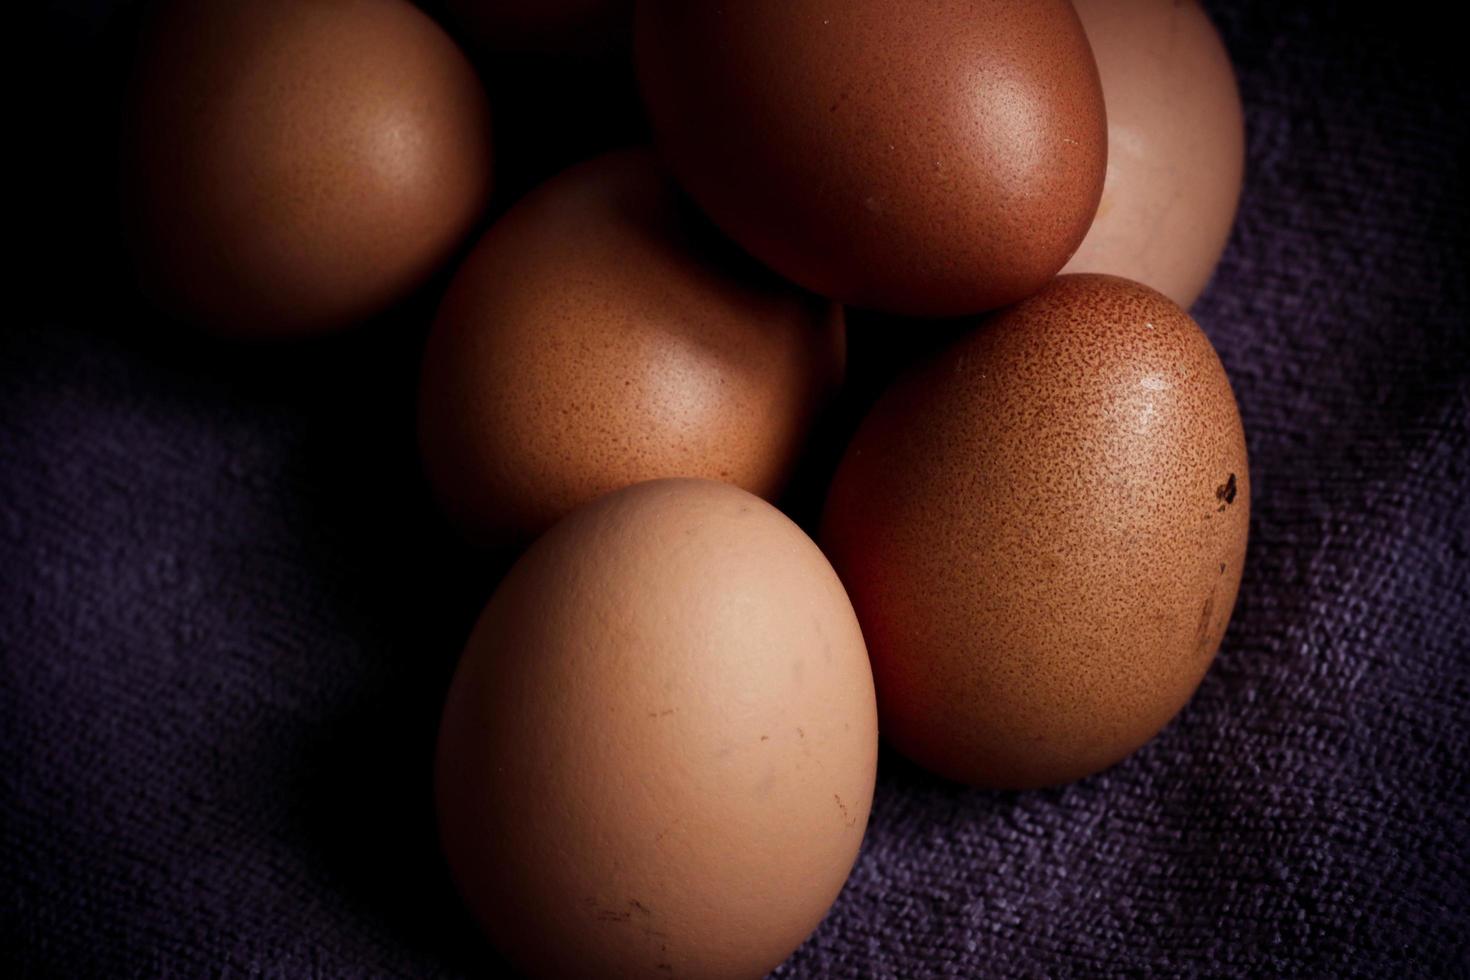 bruna ägg på en svart bakgrund foto